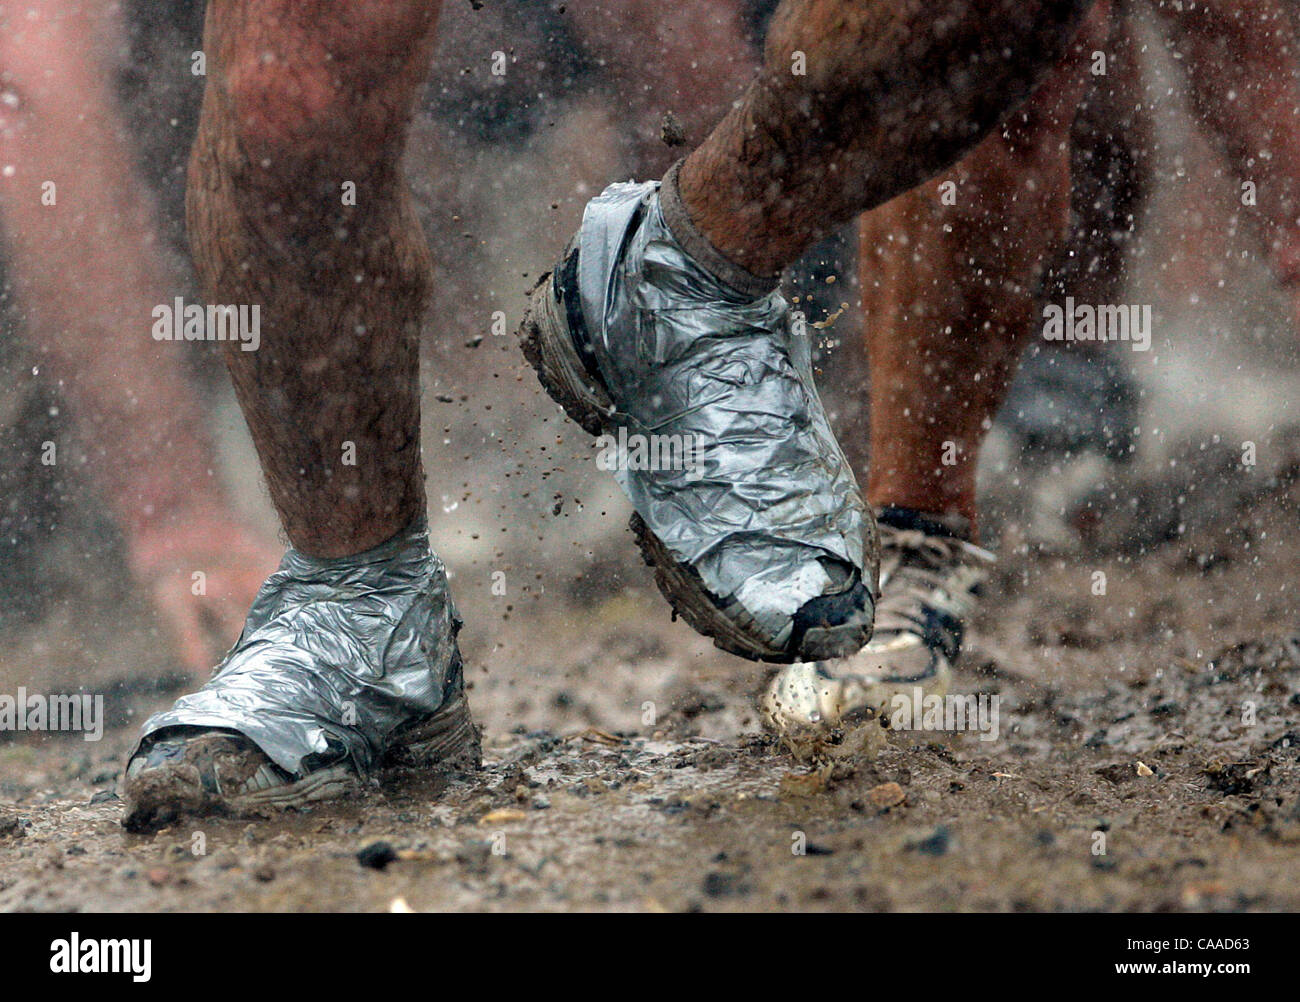 Rohr mit Klebeband Schuhe erhalten eine Training während der 2005 Armed  Services YMCA Mud Run in Camp Pendleton. Einige Läufer glauben, dass  Klebeband verhindert, dass Ihre Schuhe immer während der mehrere Mud-Pits